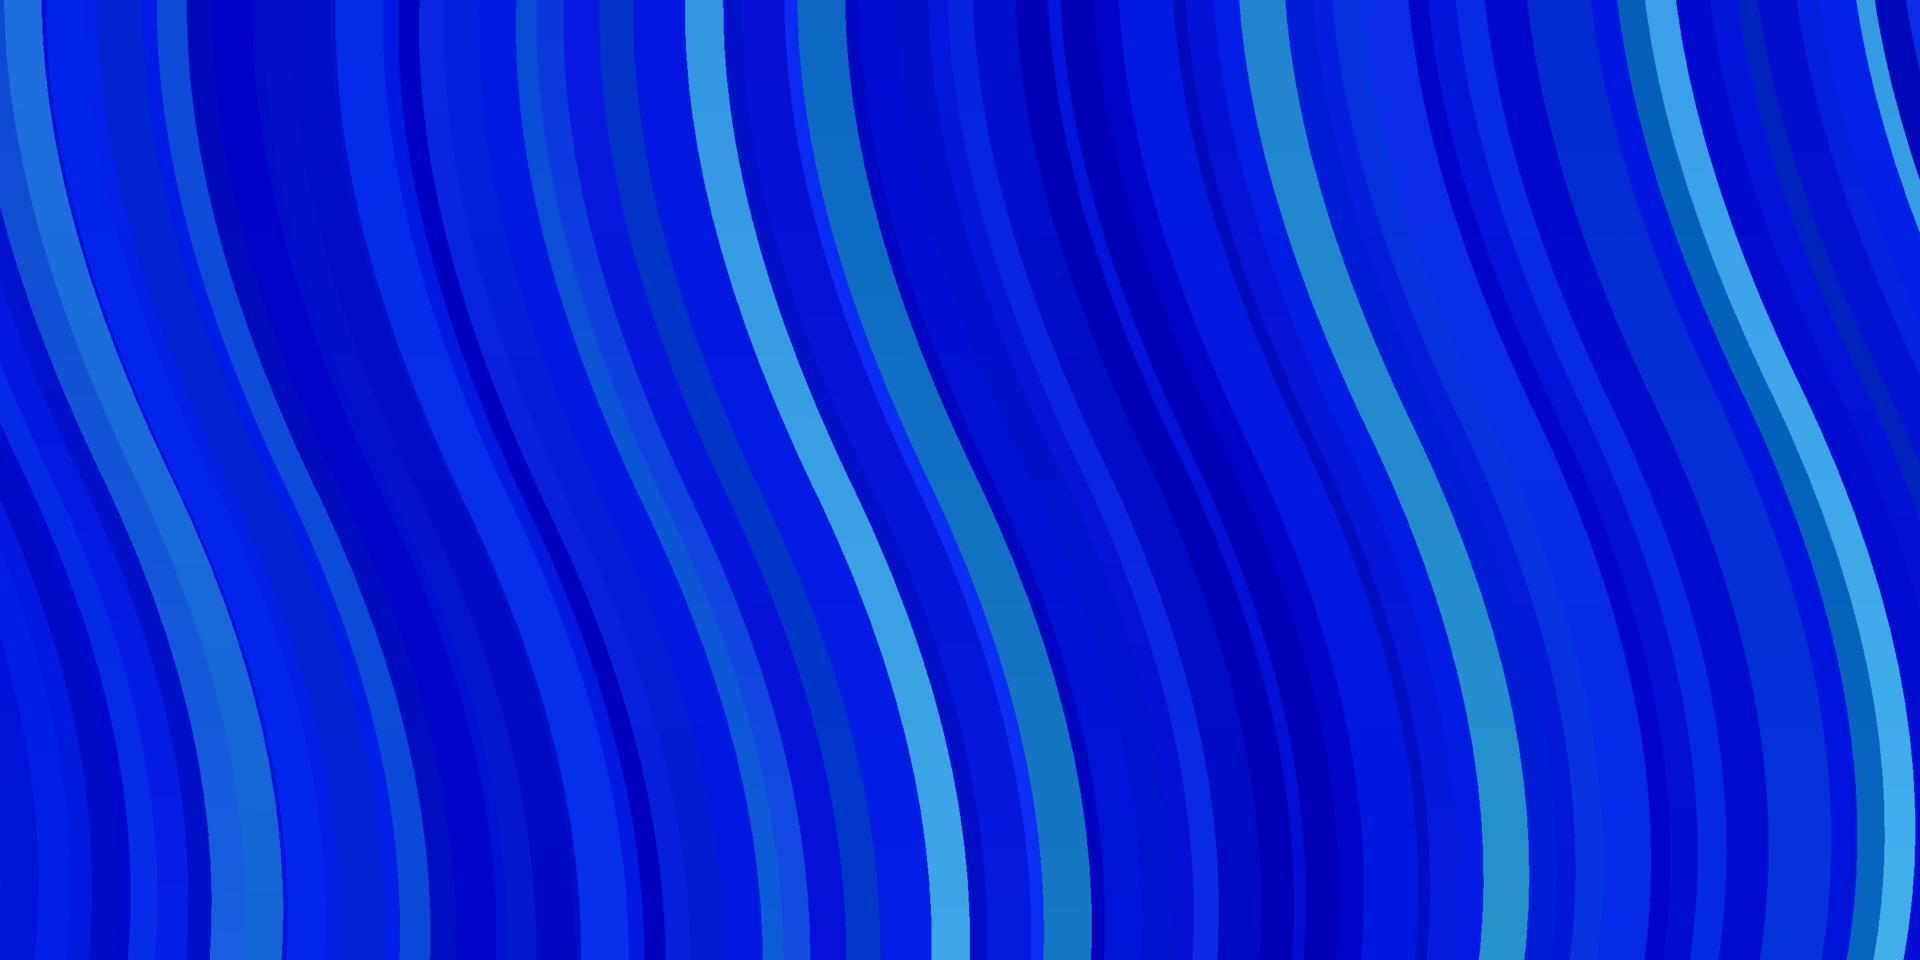 toile de fond de vecteur bleu clair avec des lignes pliées.